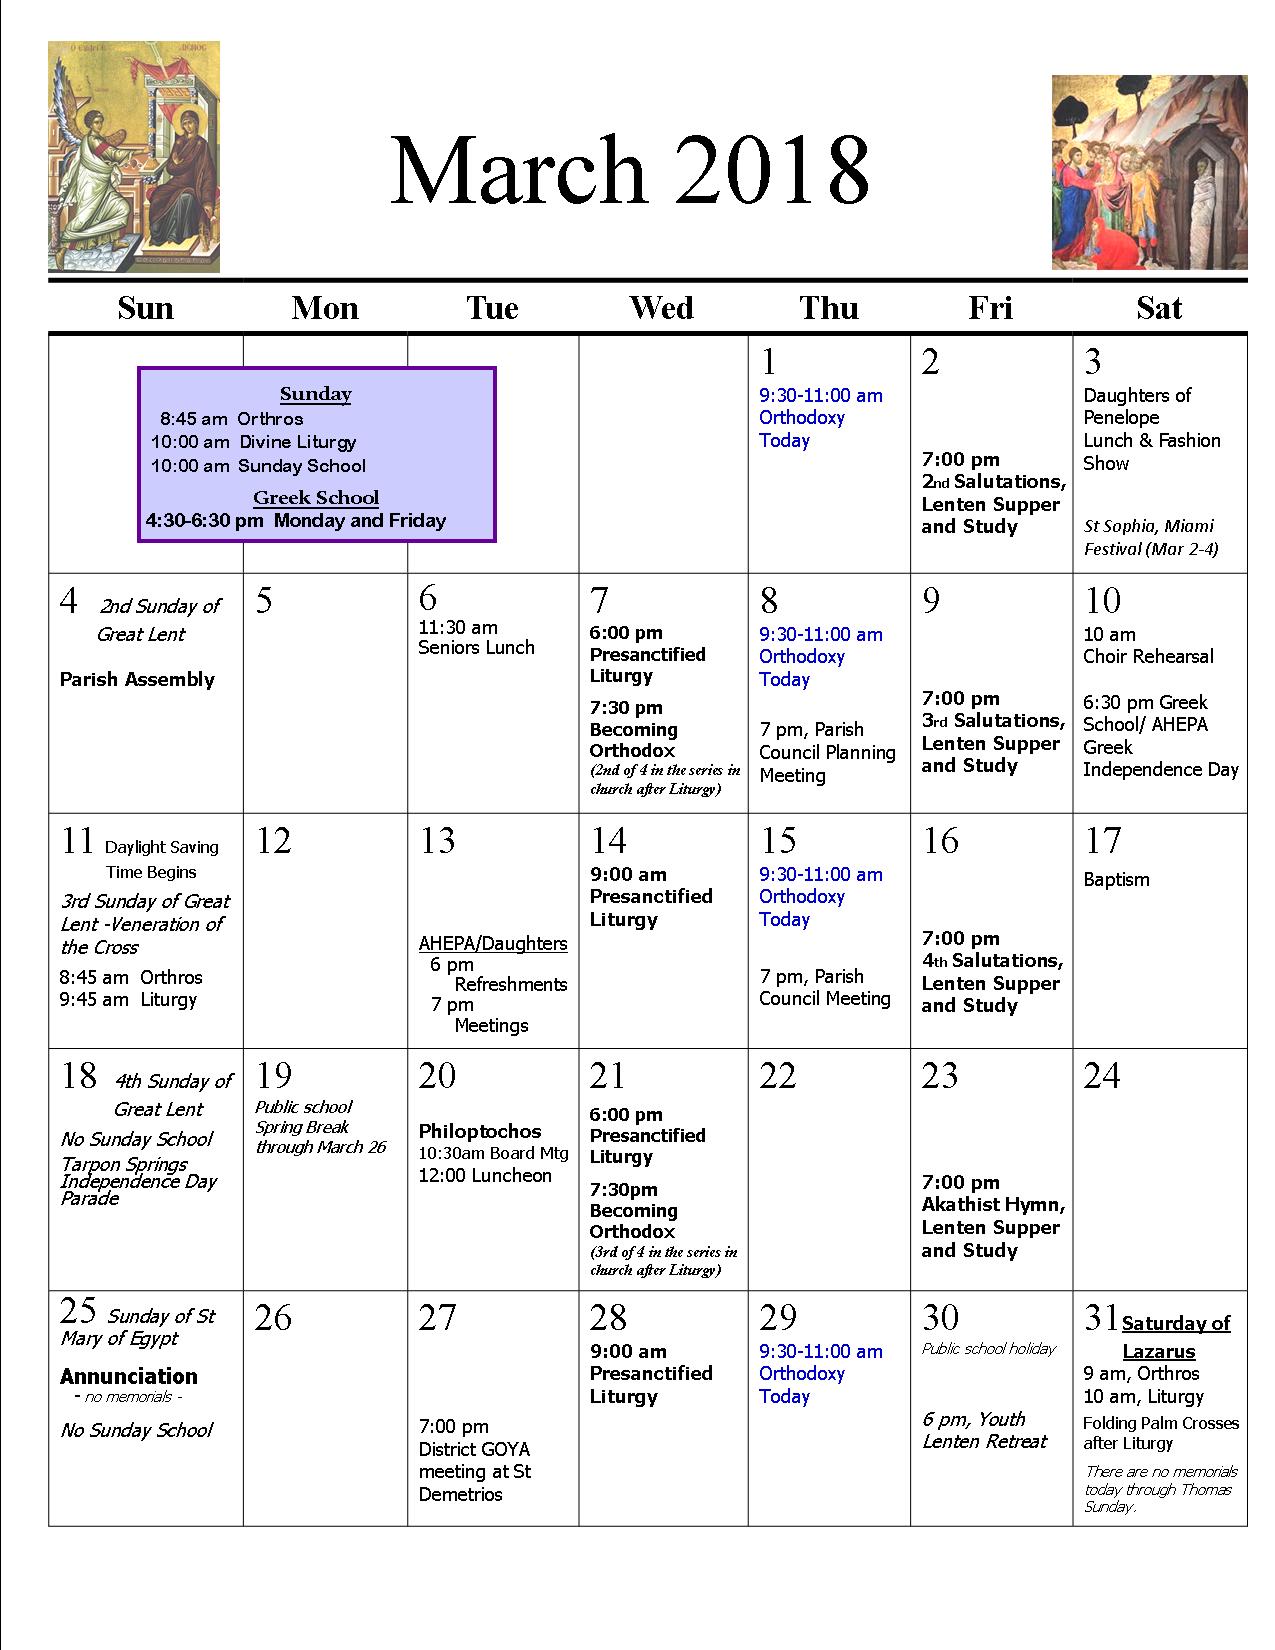 March 2018 Parish Calendar revised